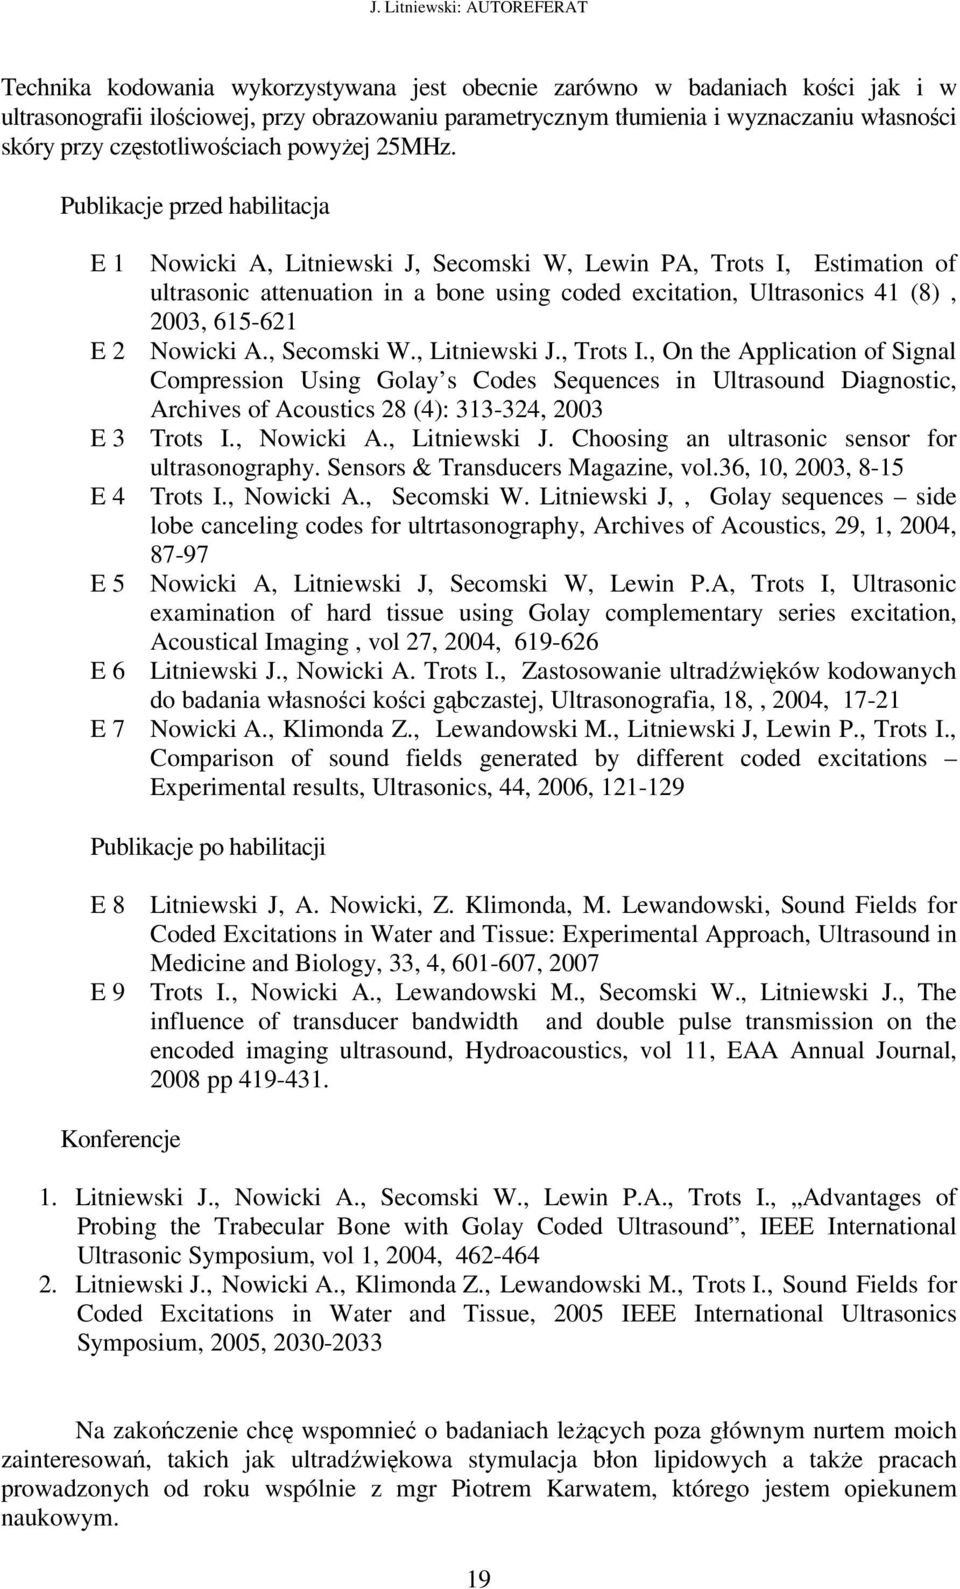 Publikacje przed habilitacja E 1 Nowicki A, Litniewski J, Secomski W, Lewin PA, Trots I, Estimation of ultrasonic attenuation in a bone using coded excitation, Ultrasonics 41 (8), 2003, 615-621 E 2